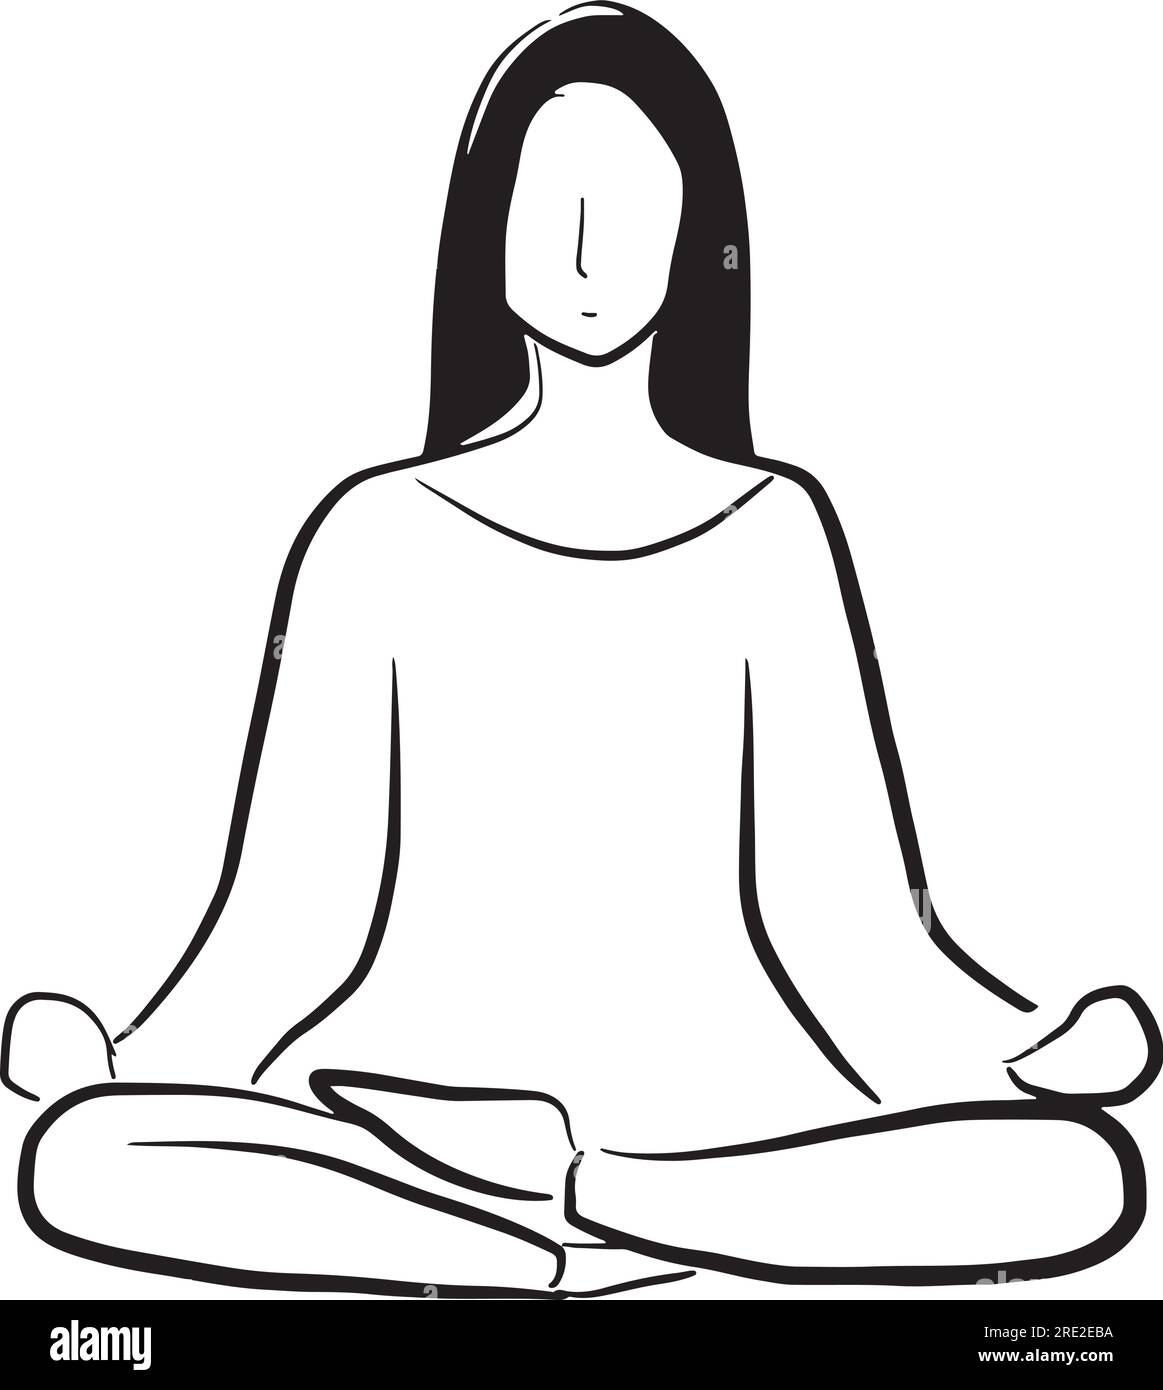 Image vectorisée en noir et blanc d'une femme faisant du yoga. Illustration de Vecteur